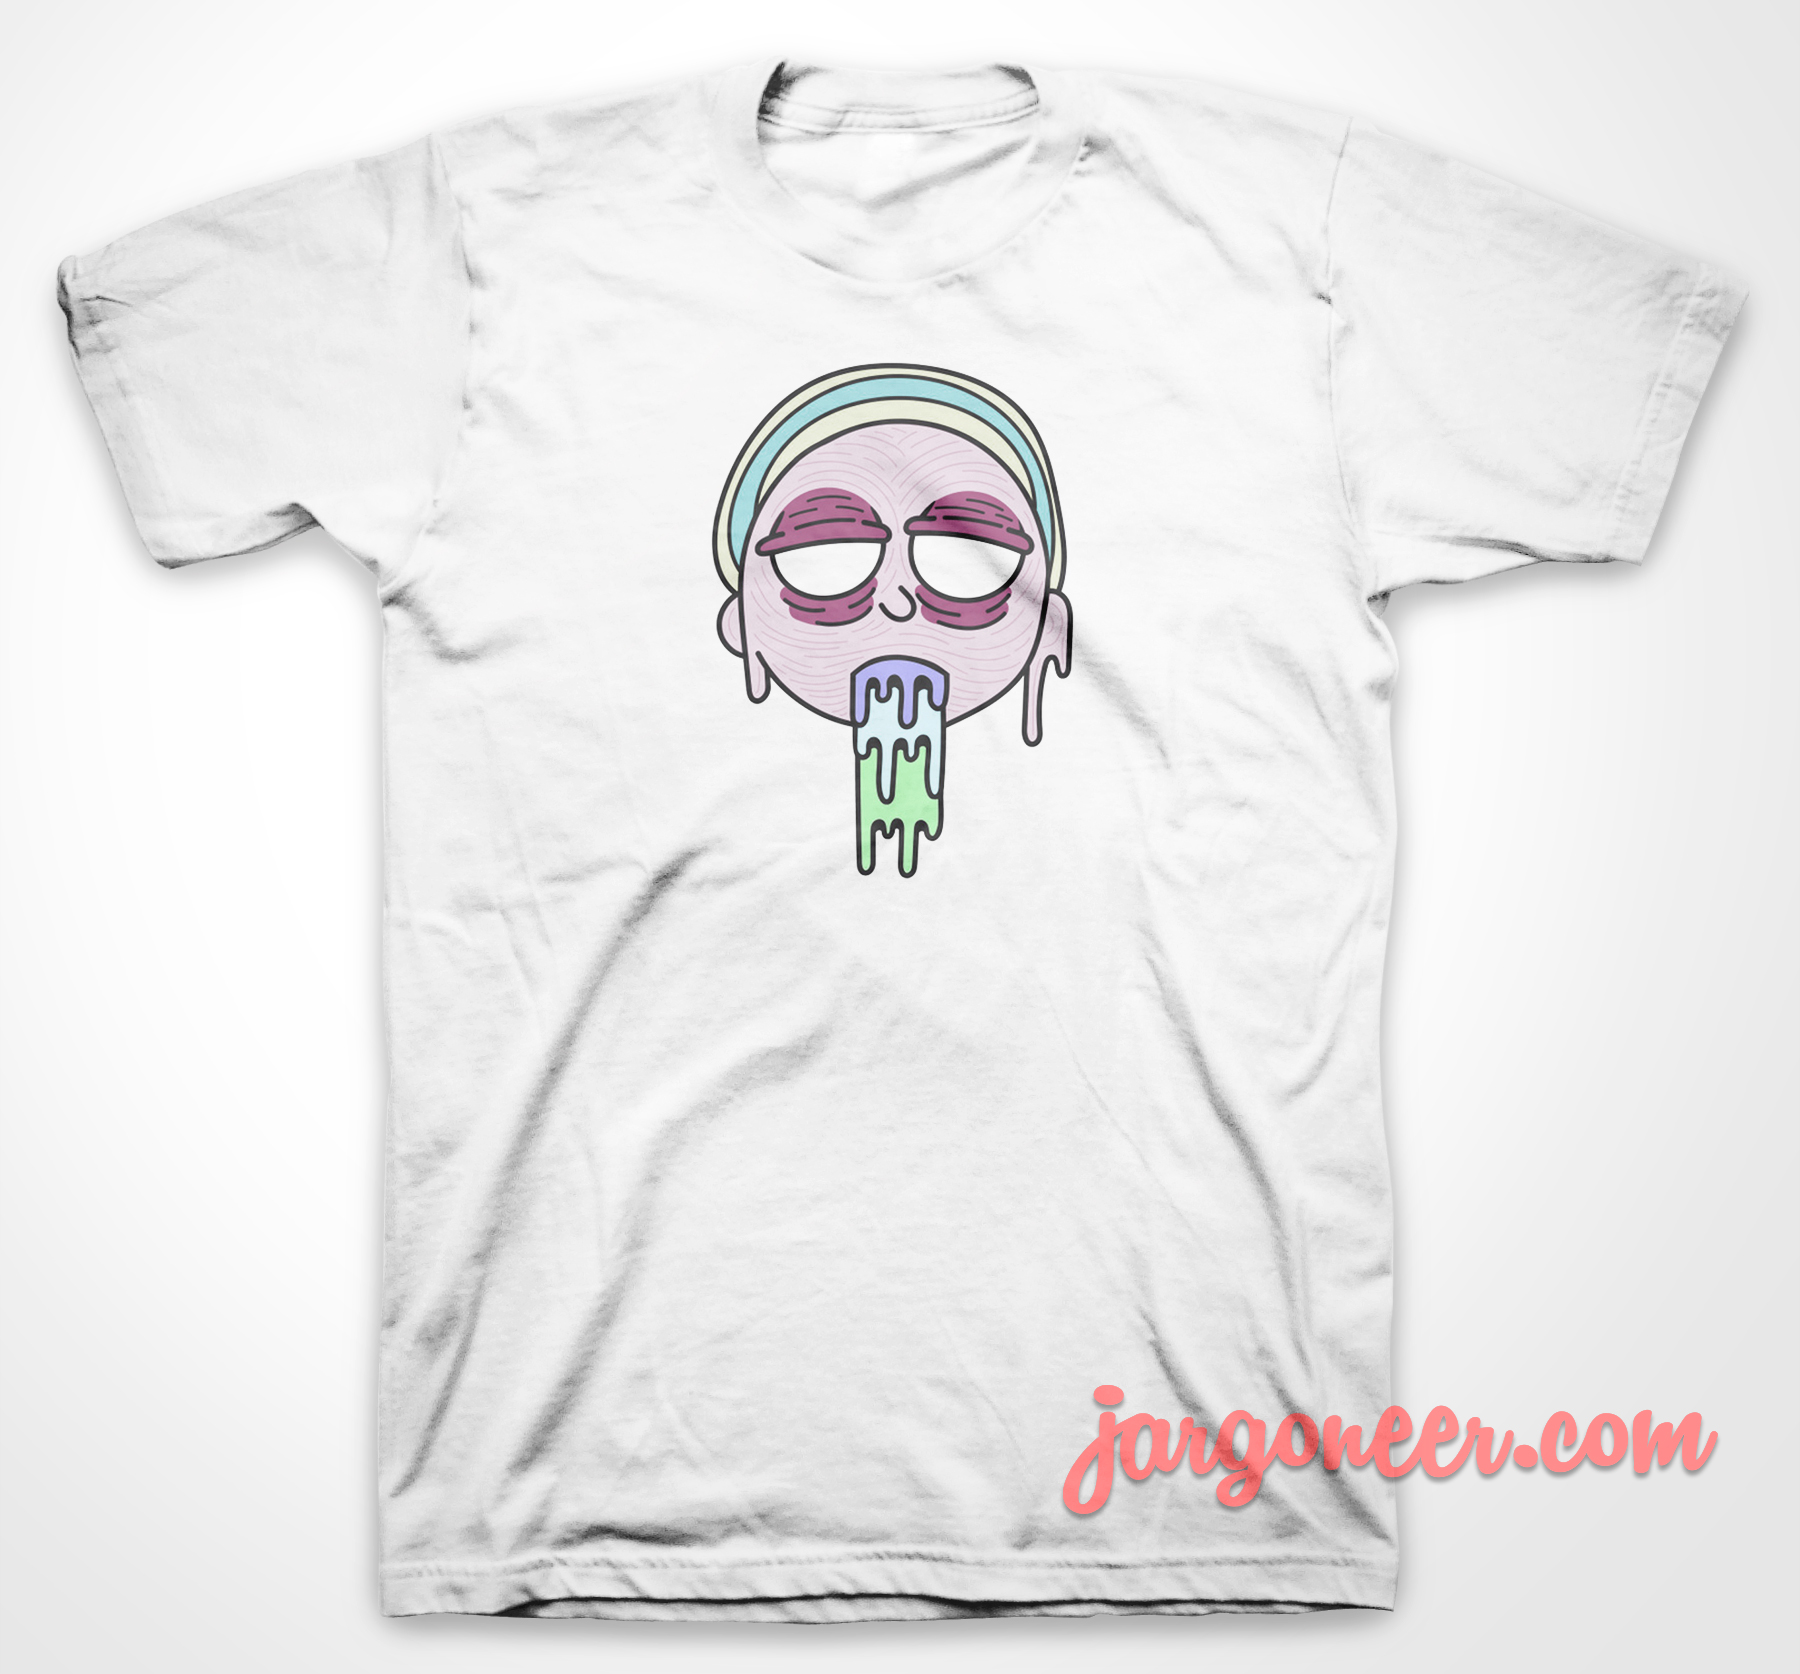 Trippy Morty - Shop Unique Graphic Cool Shirt Designs